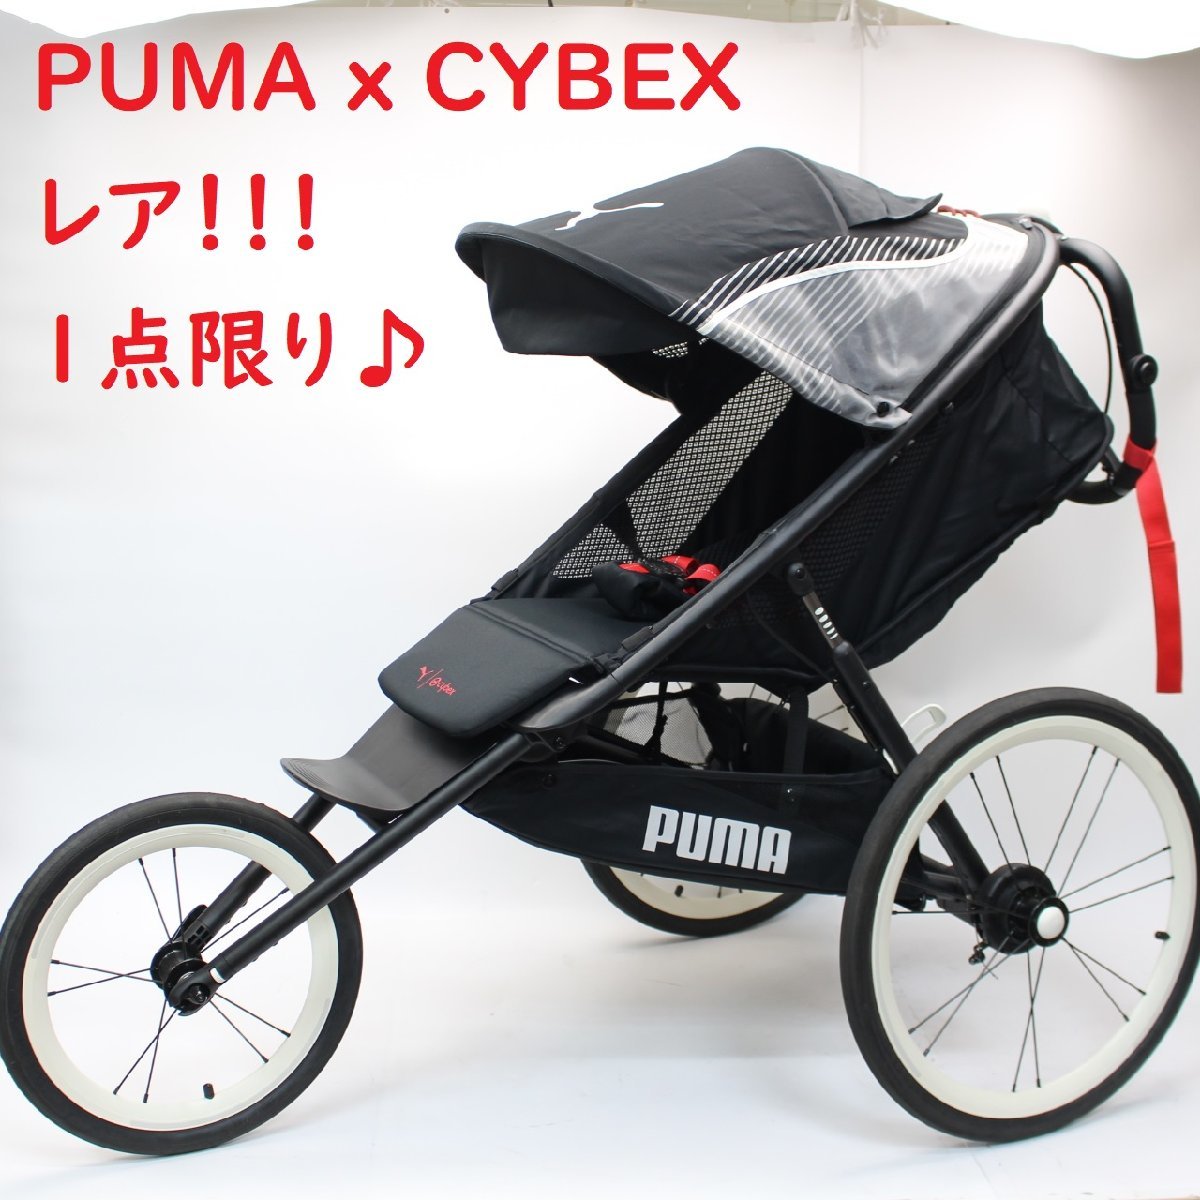 横浜市緑区にて PUMA x CYBEX ランニング用ベビーカー   を出張買取させて頂きました。